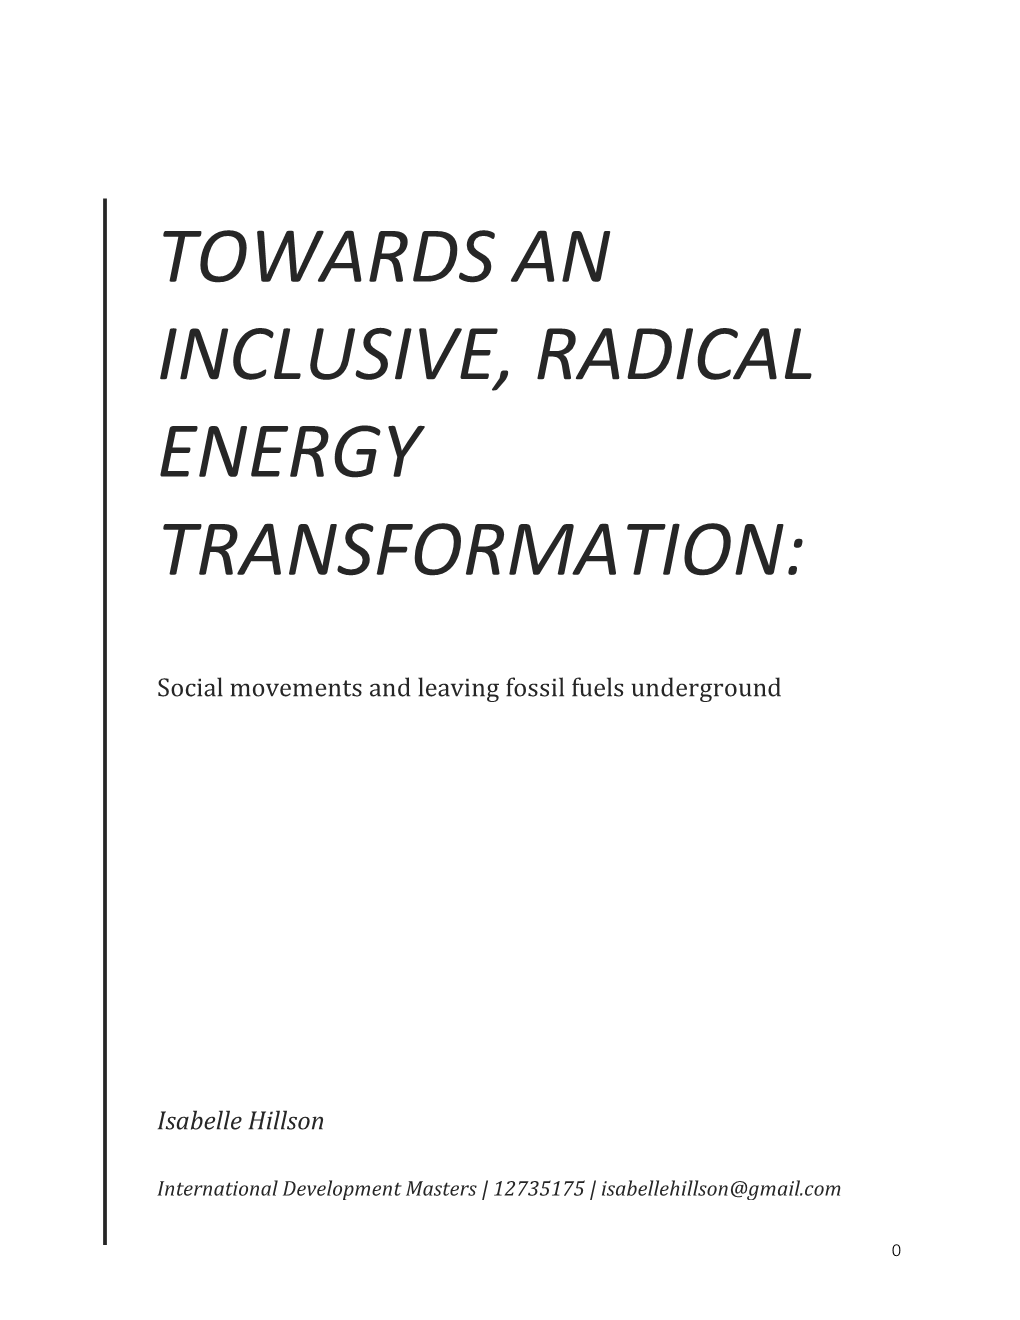 (2020). Towards an Inclusive, Radical Energy